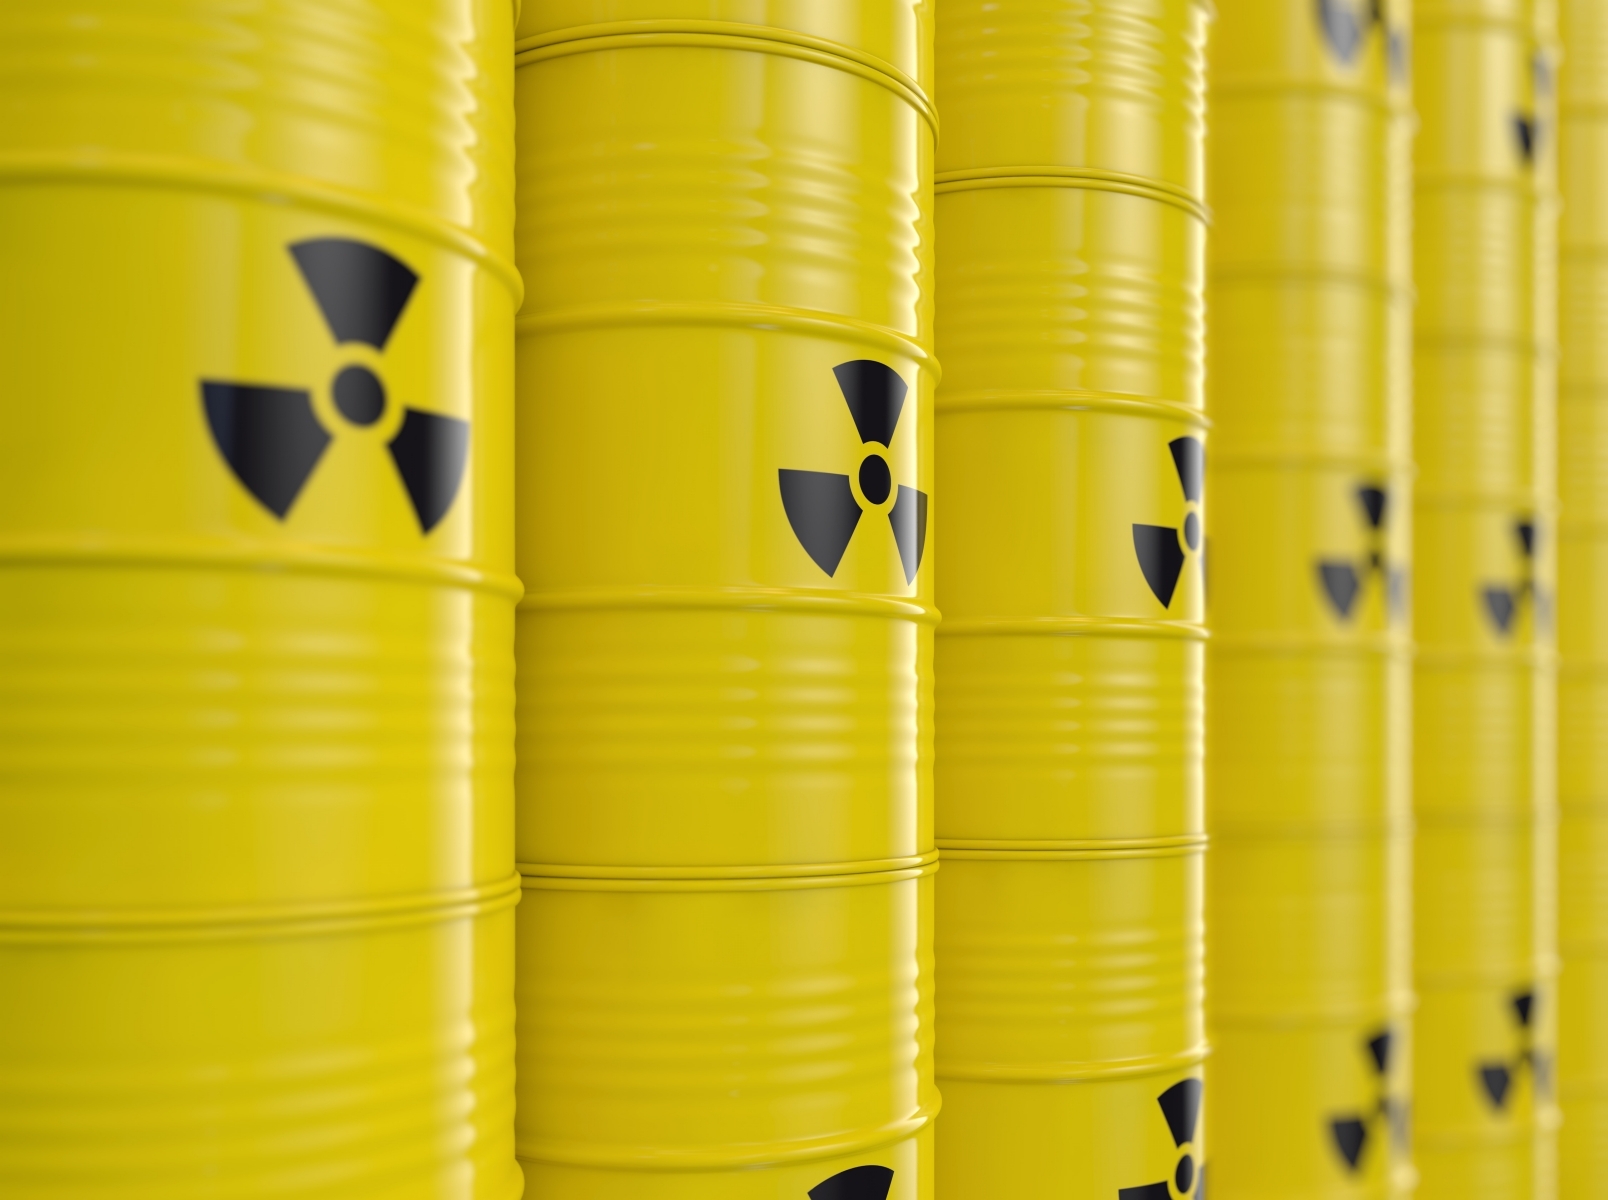 МАГАТЭ и Россия подписали договор по транспортировке урана в Казахстан